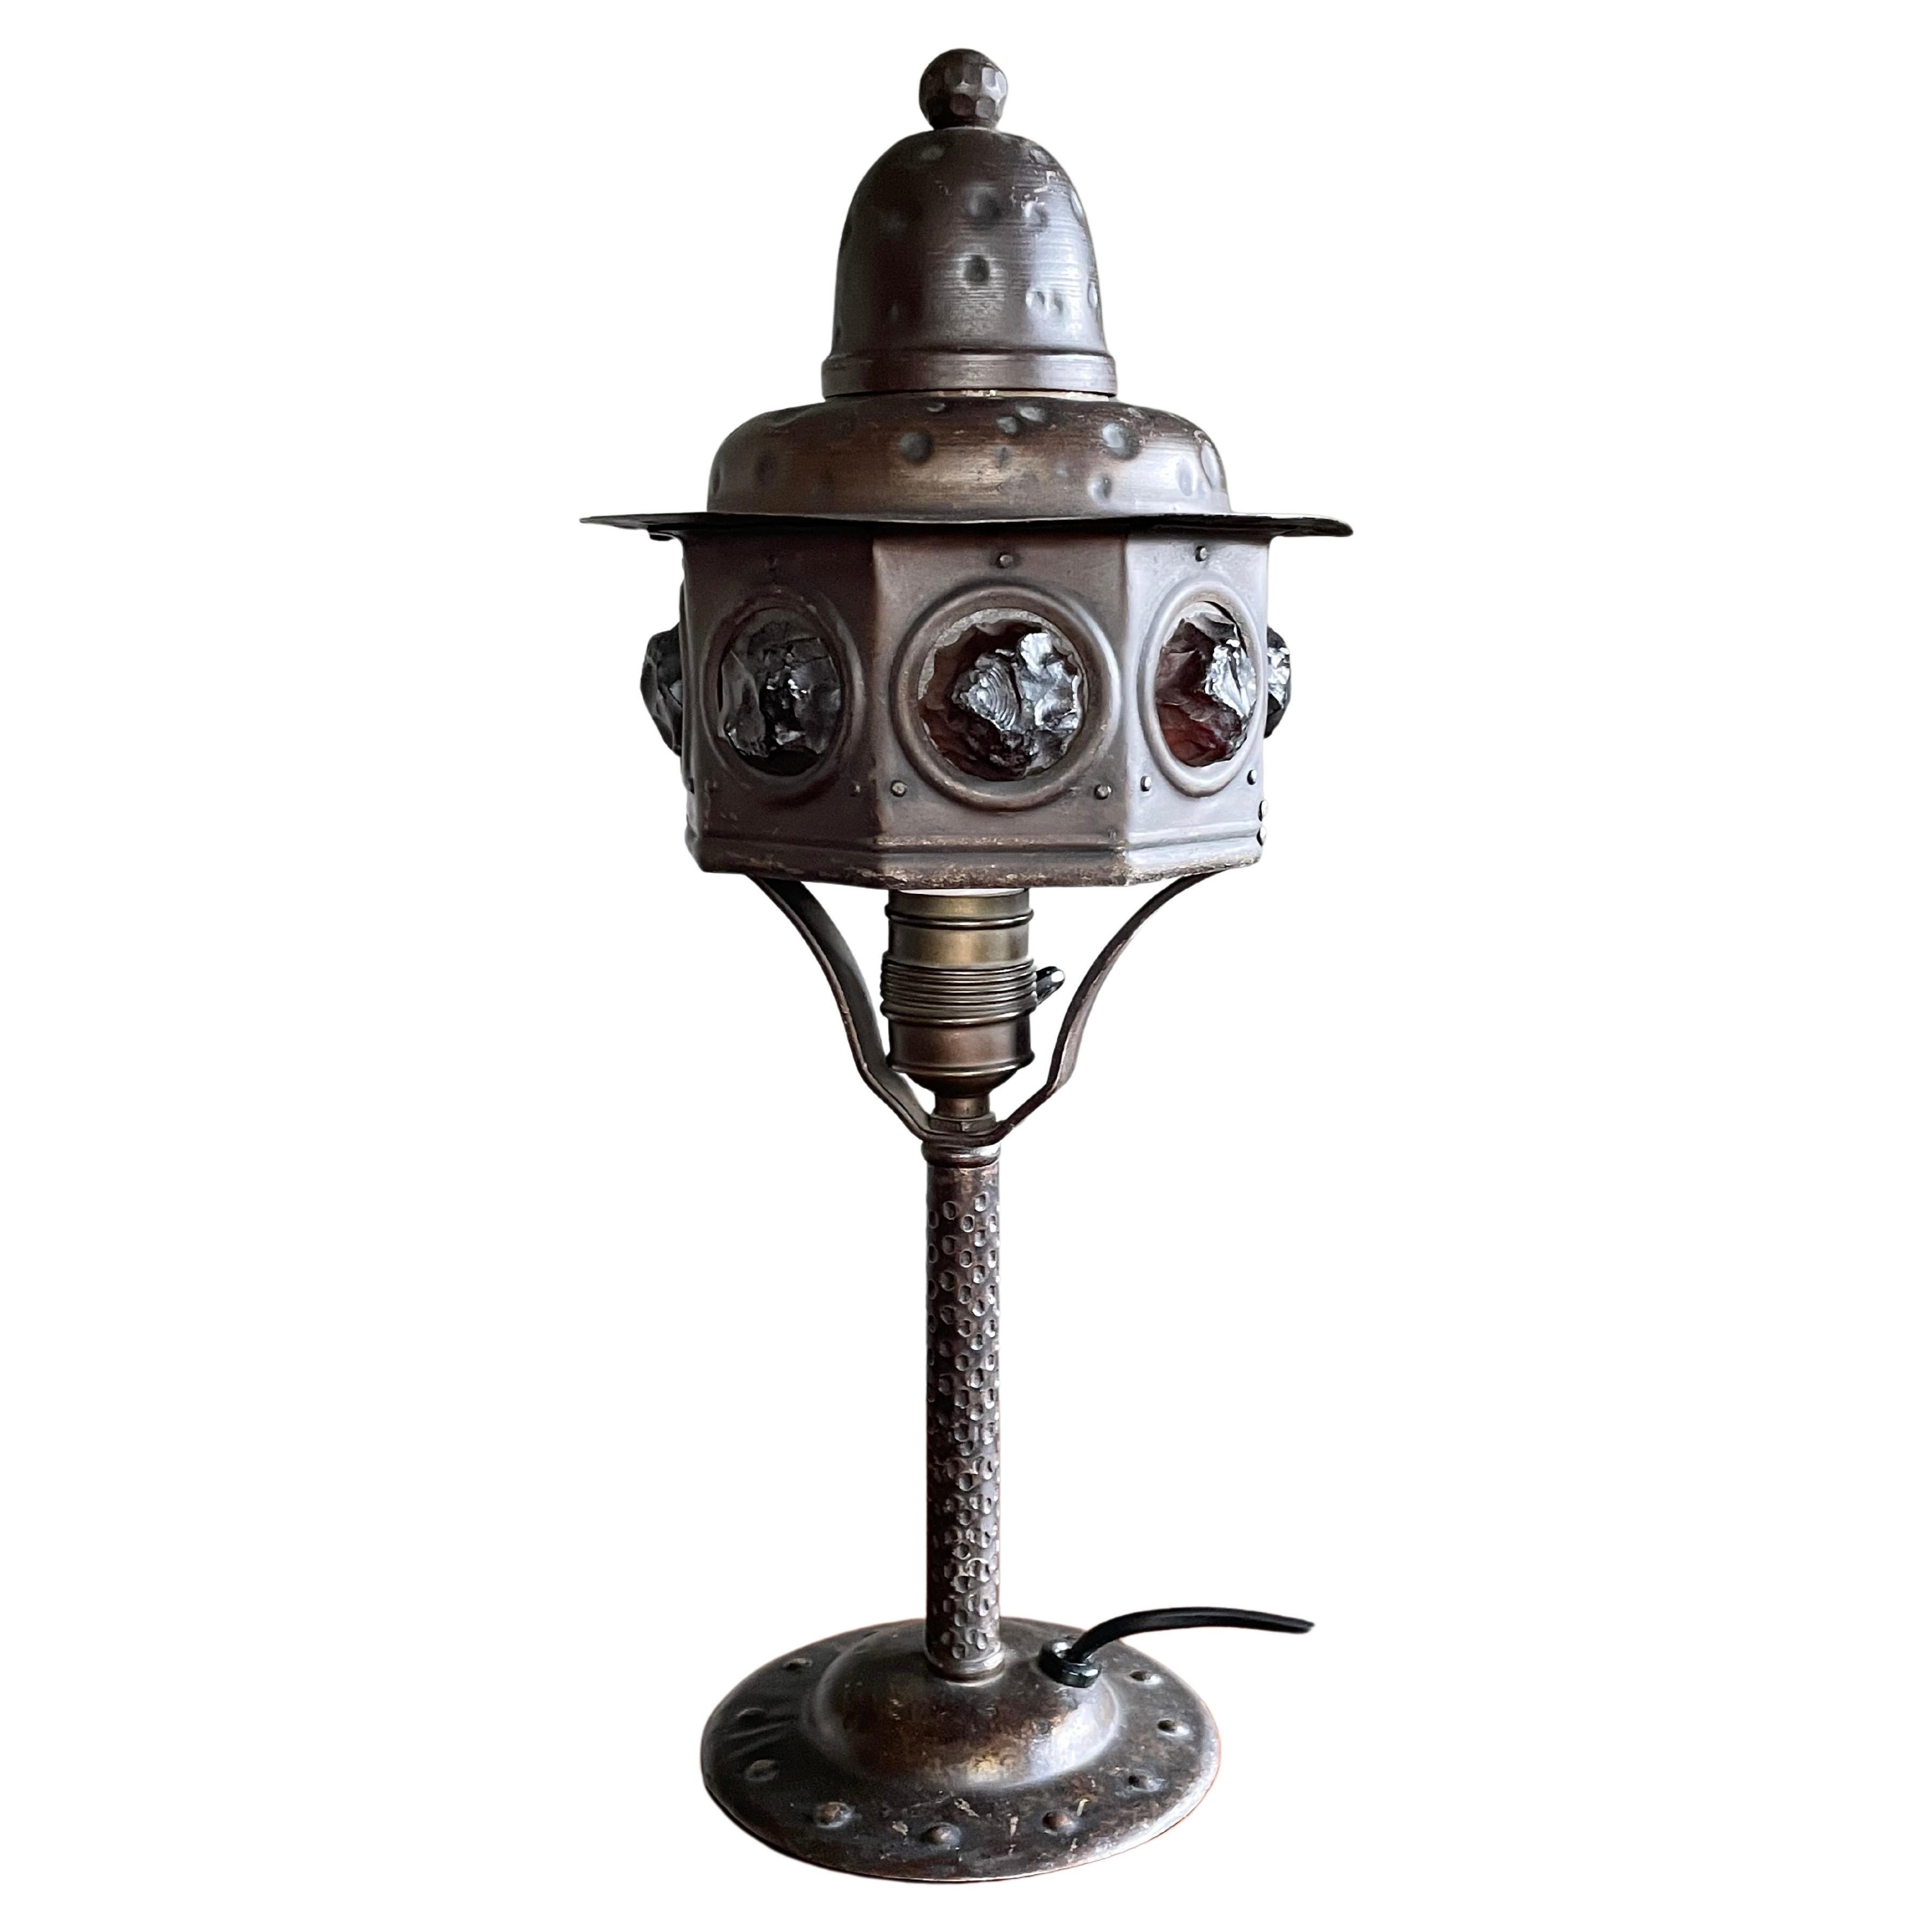 Lampe de table ou de bureau Arts and Crafts en fer forgé et verre épais, début des années 1900